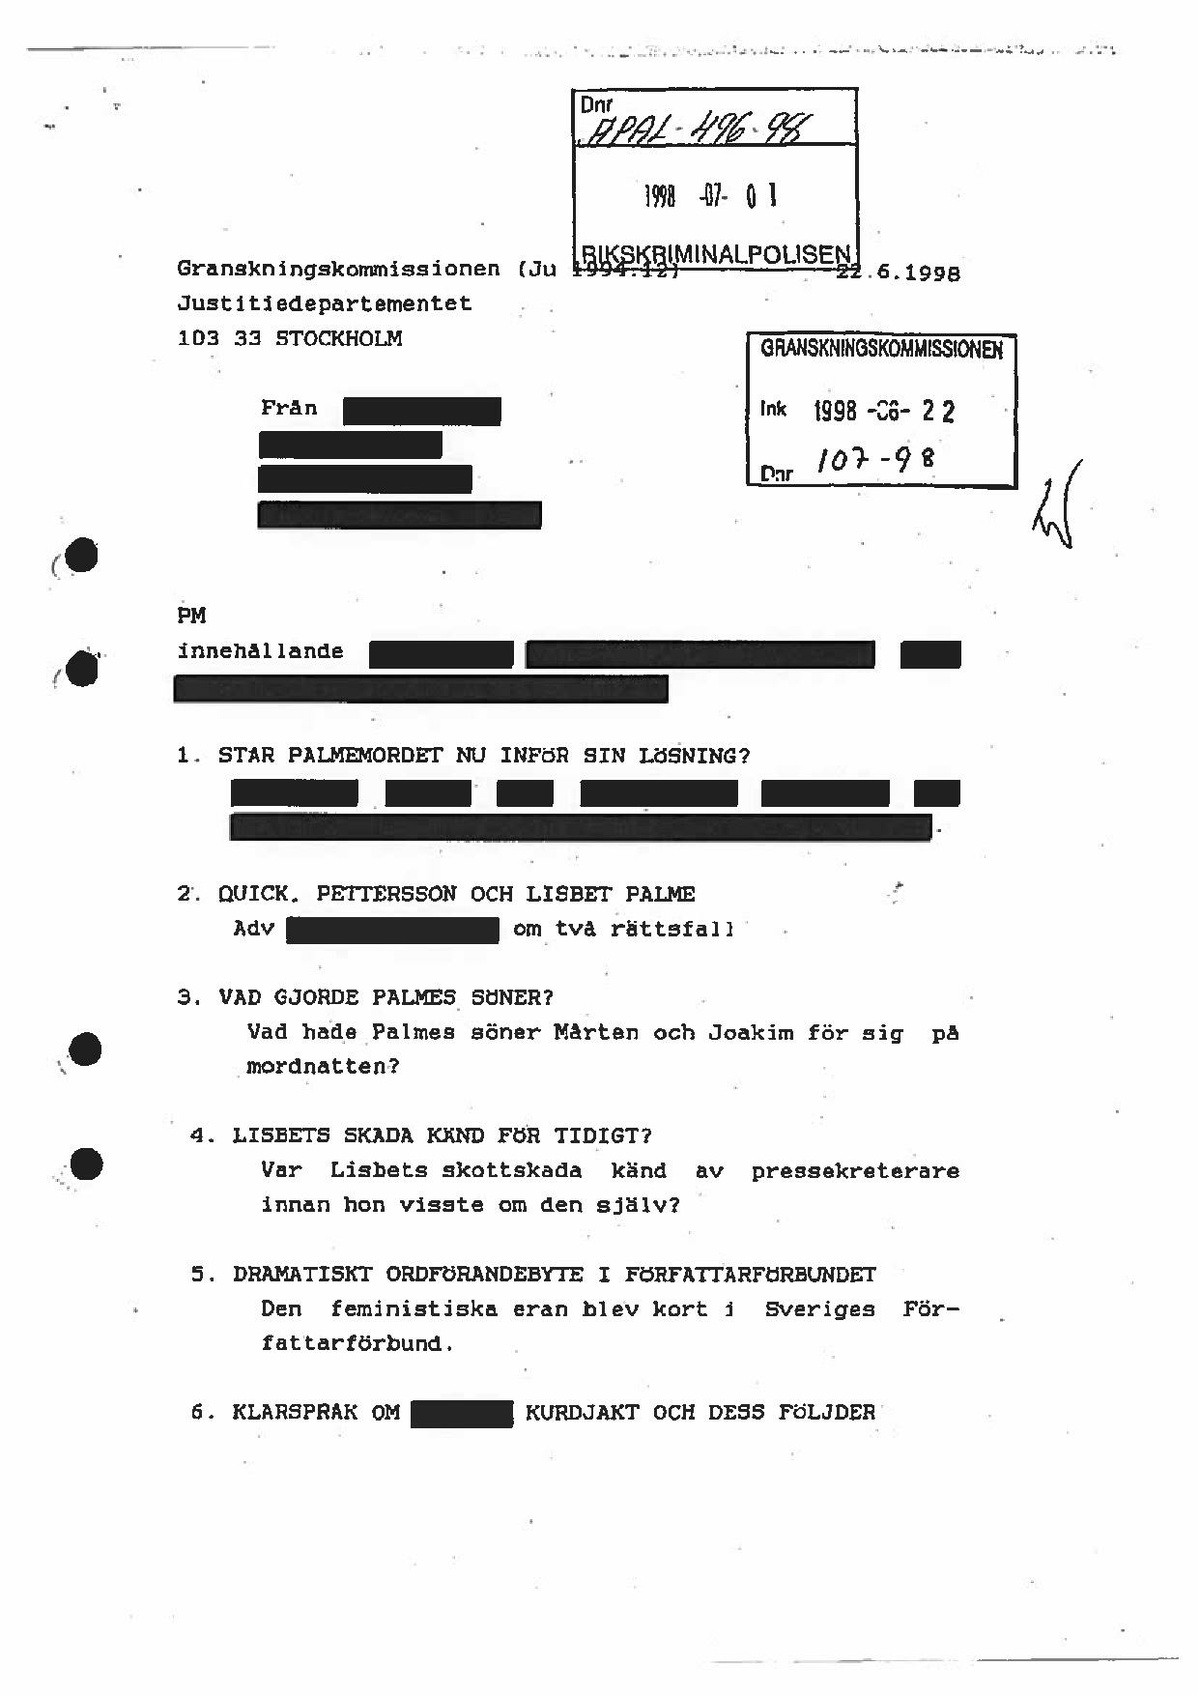 Pri-1998-06-22 H19831-00 Handlingar tillställda Granskningskommissionen.pdf